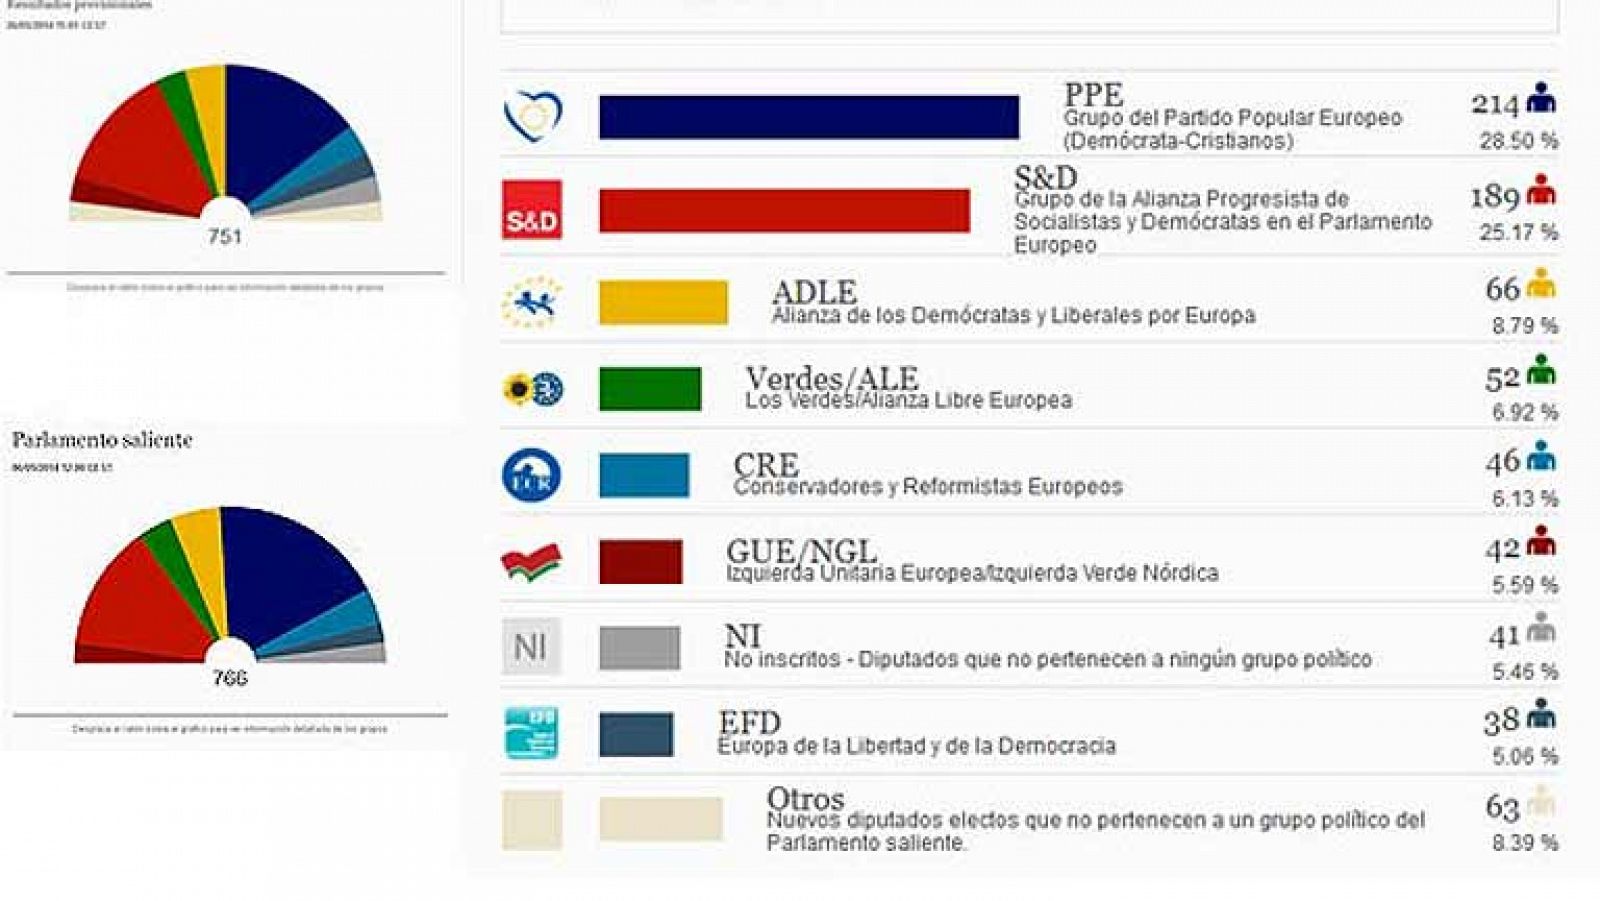  El PP europeo gana las elecciones pero estará obligado a pactar una coalición